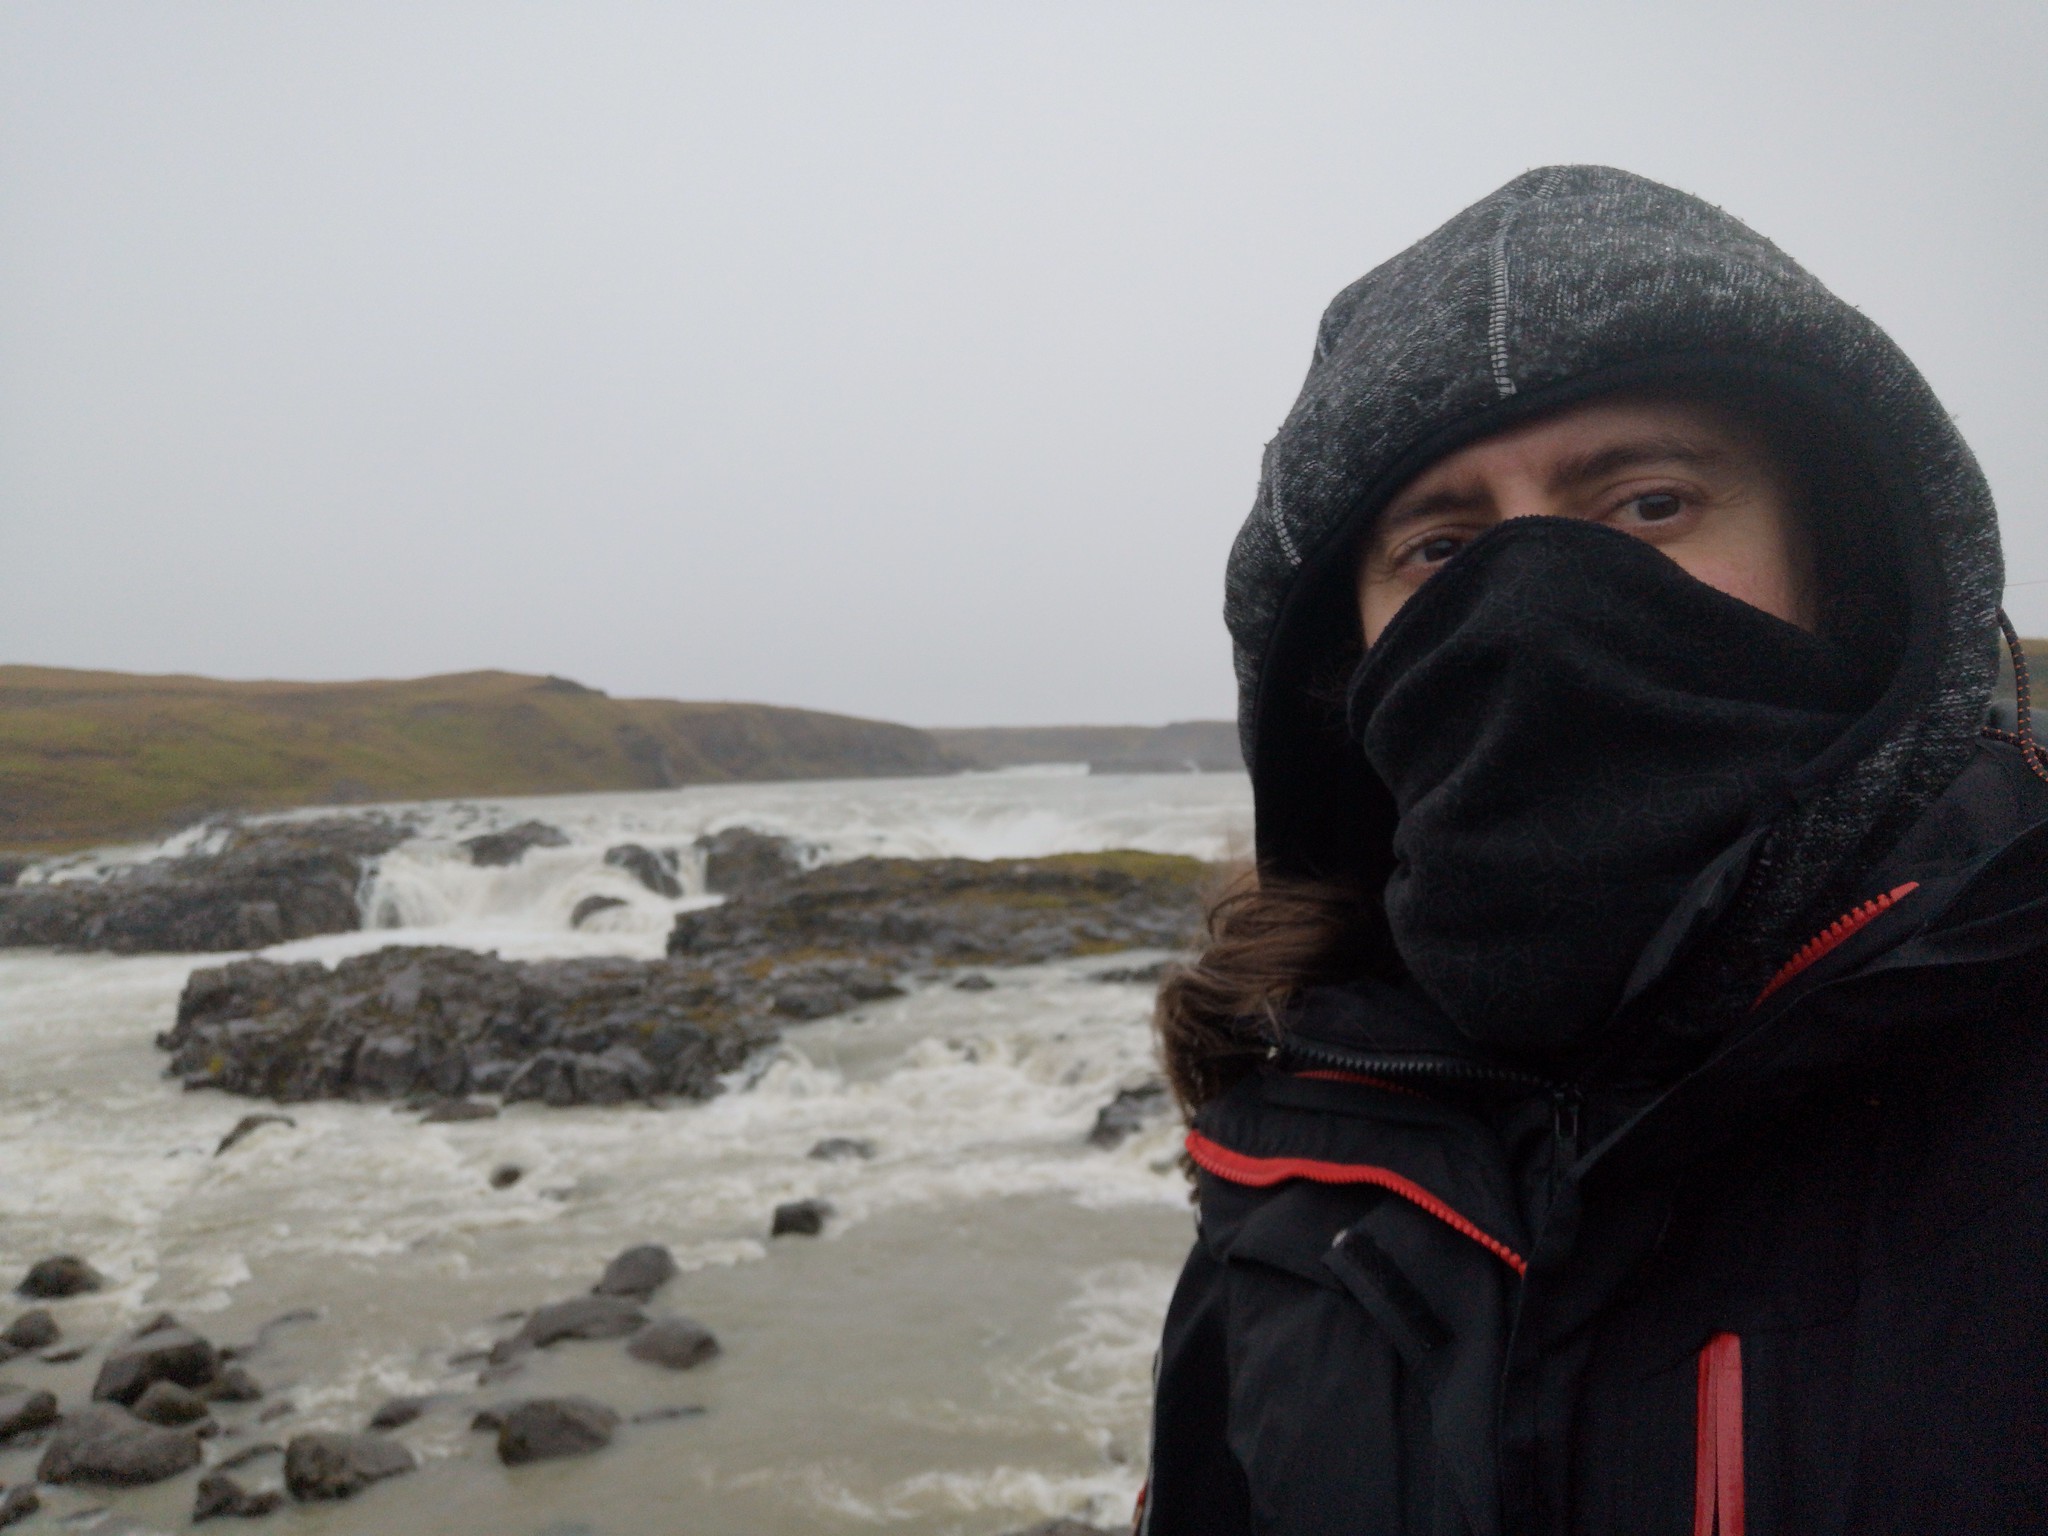 Las cascadas más espectaculares del Sur de Islandia. ¡No te las pierdas!